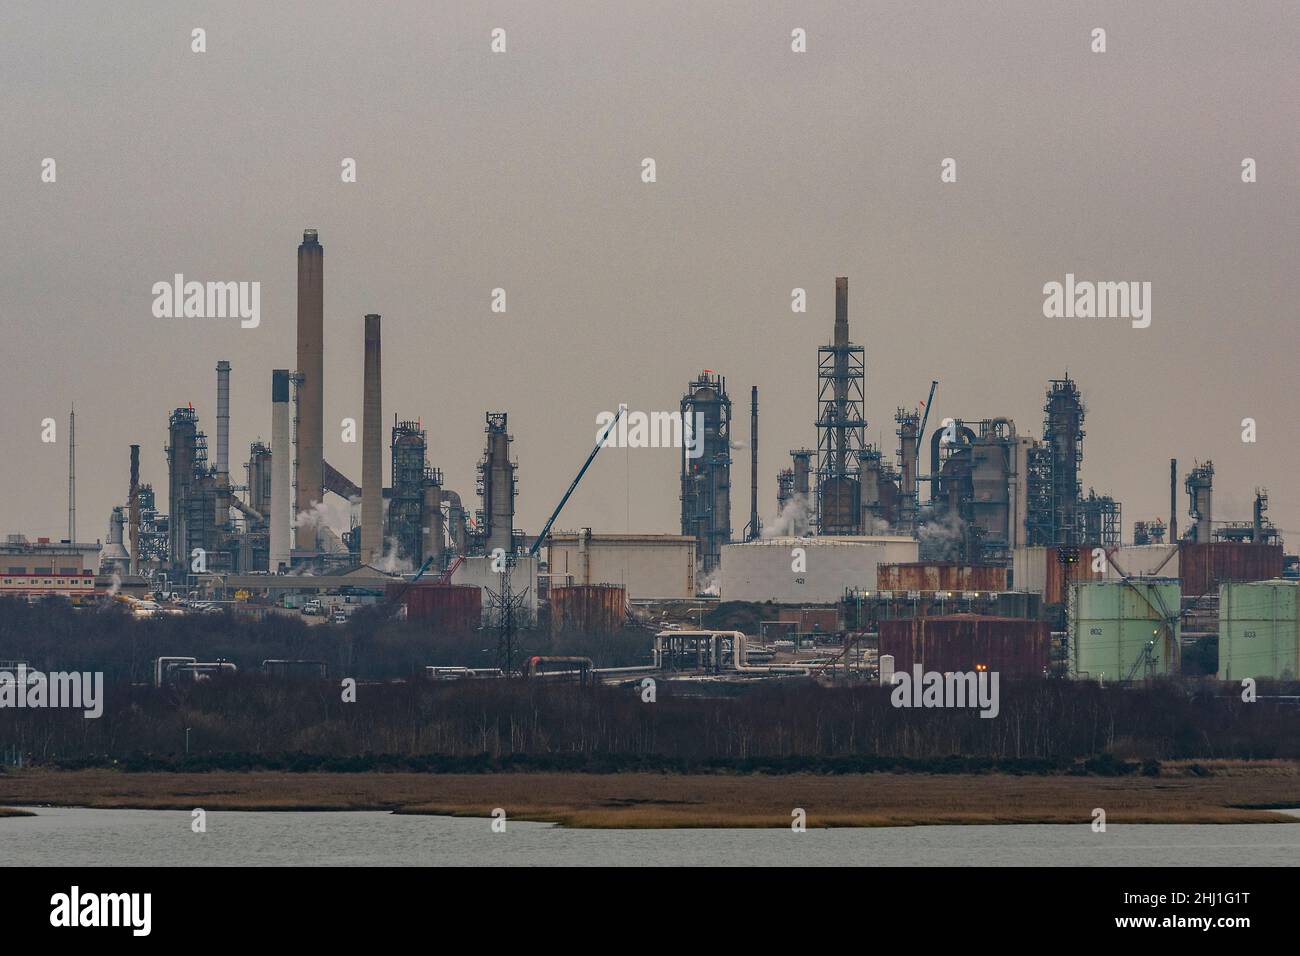 fawley-Ölraffinerie an der Küste des solent in southampton Docks, uk, petrochemische Anlage, Ölverarbeitungsanlage. Stockfoto